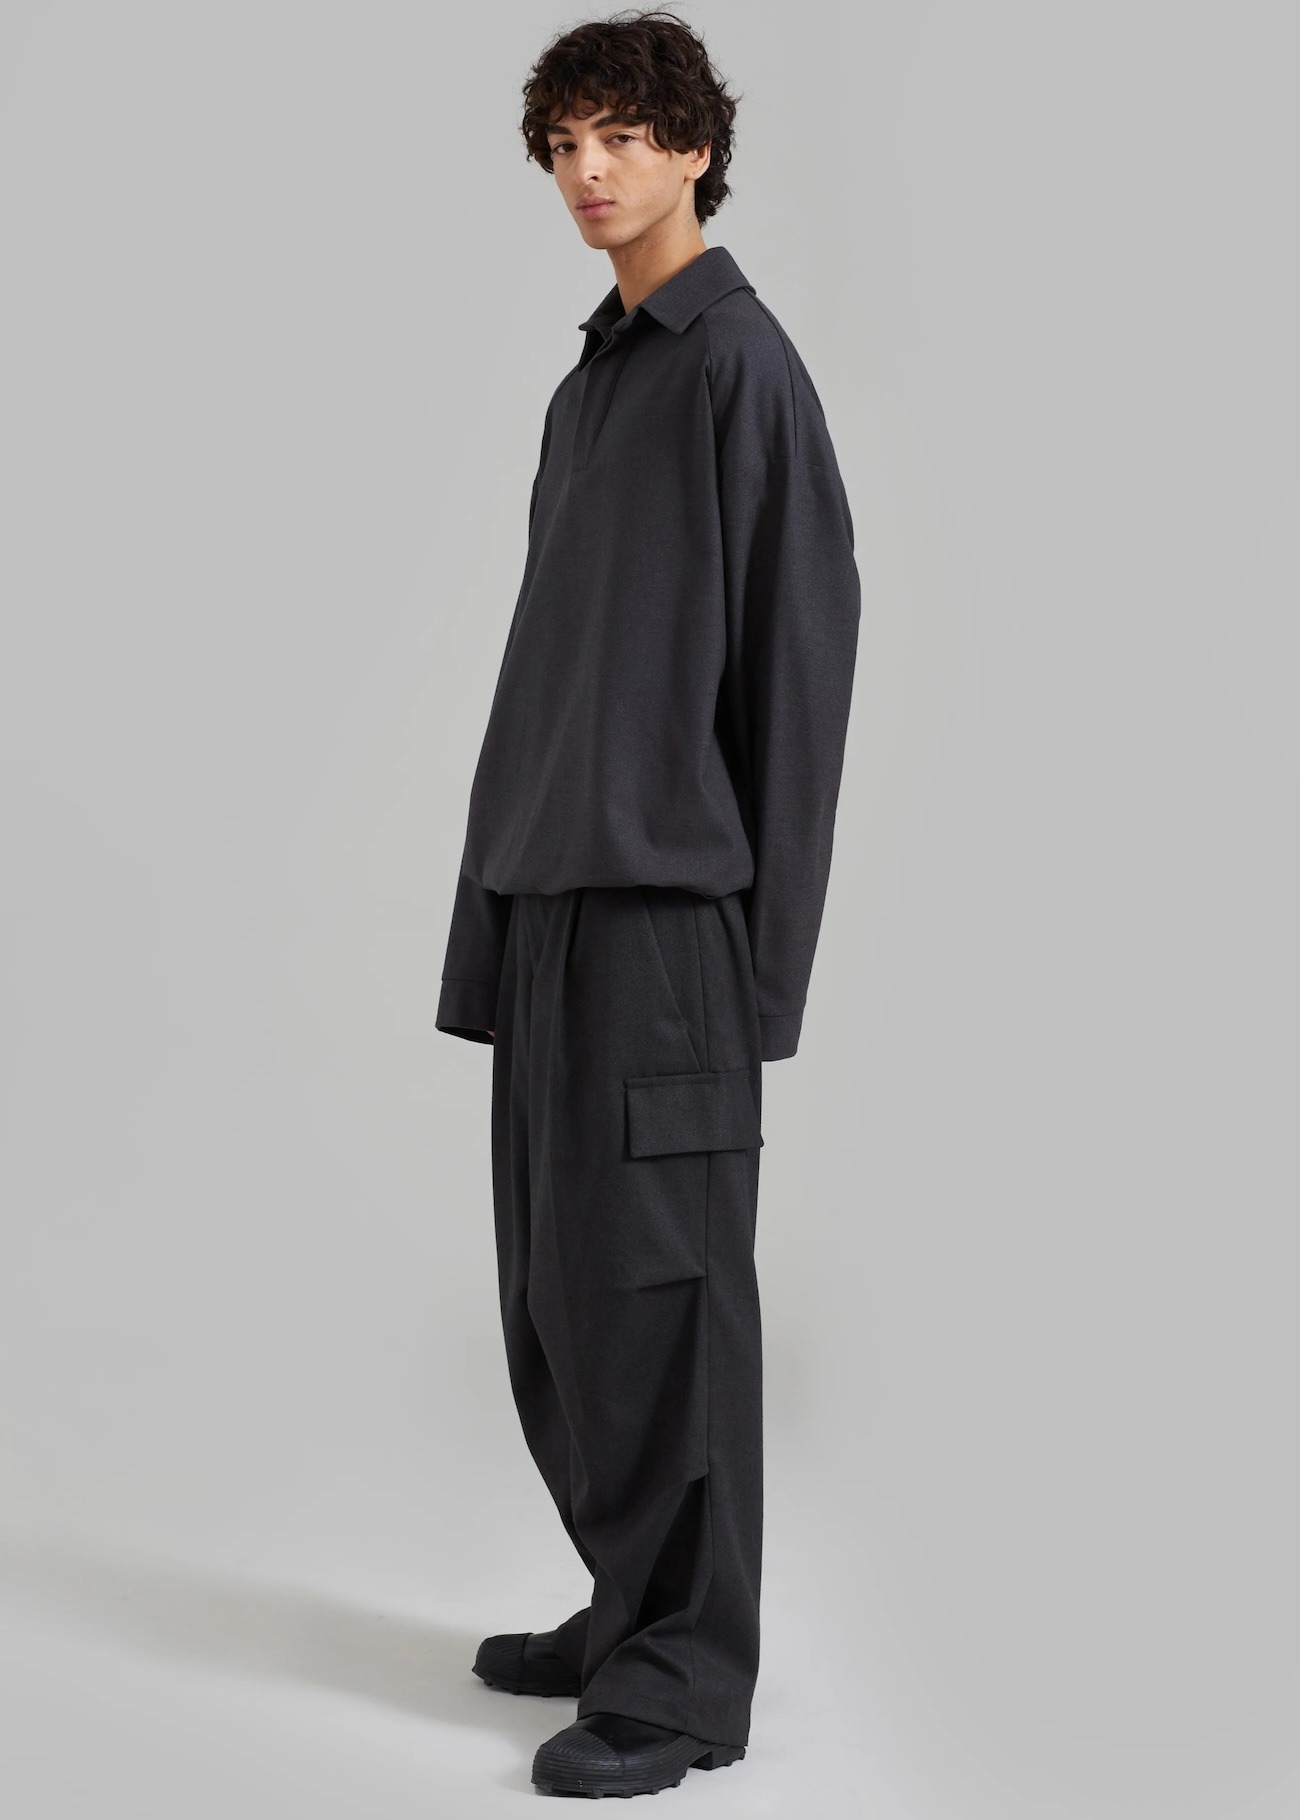 The Frankie shop marque boutique homme style minimaliste japonais coréen polo dennis